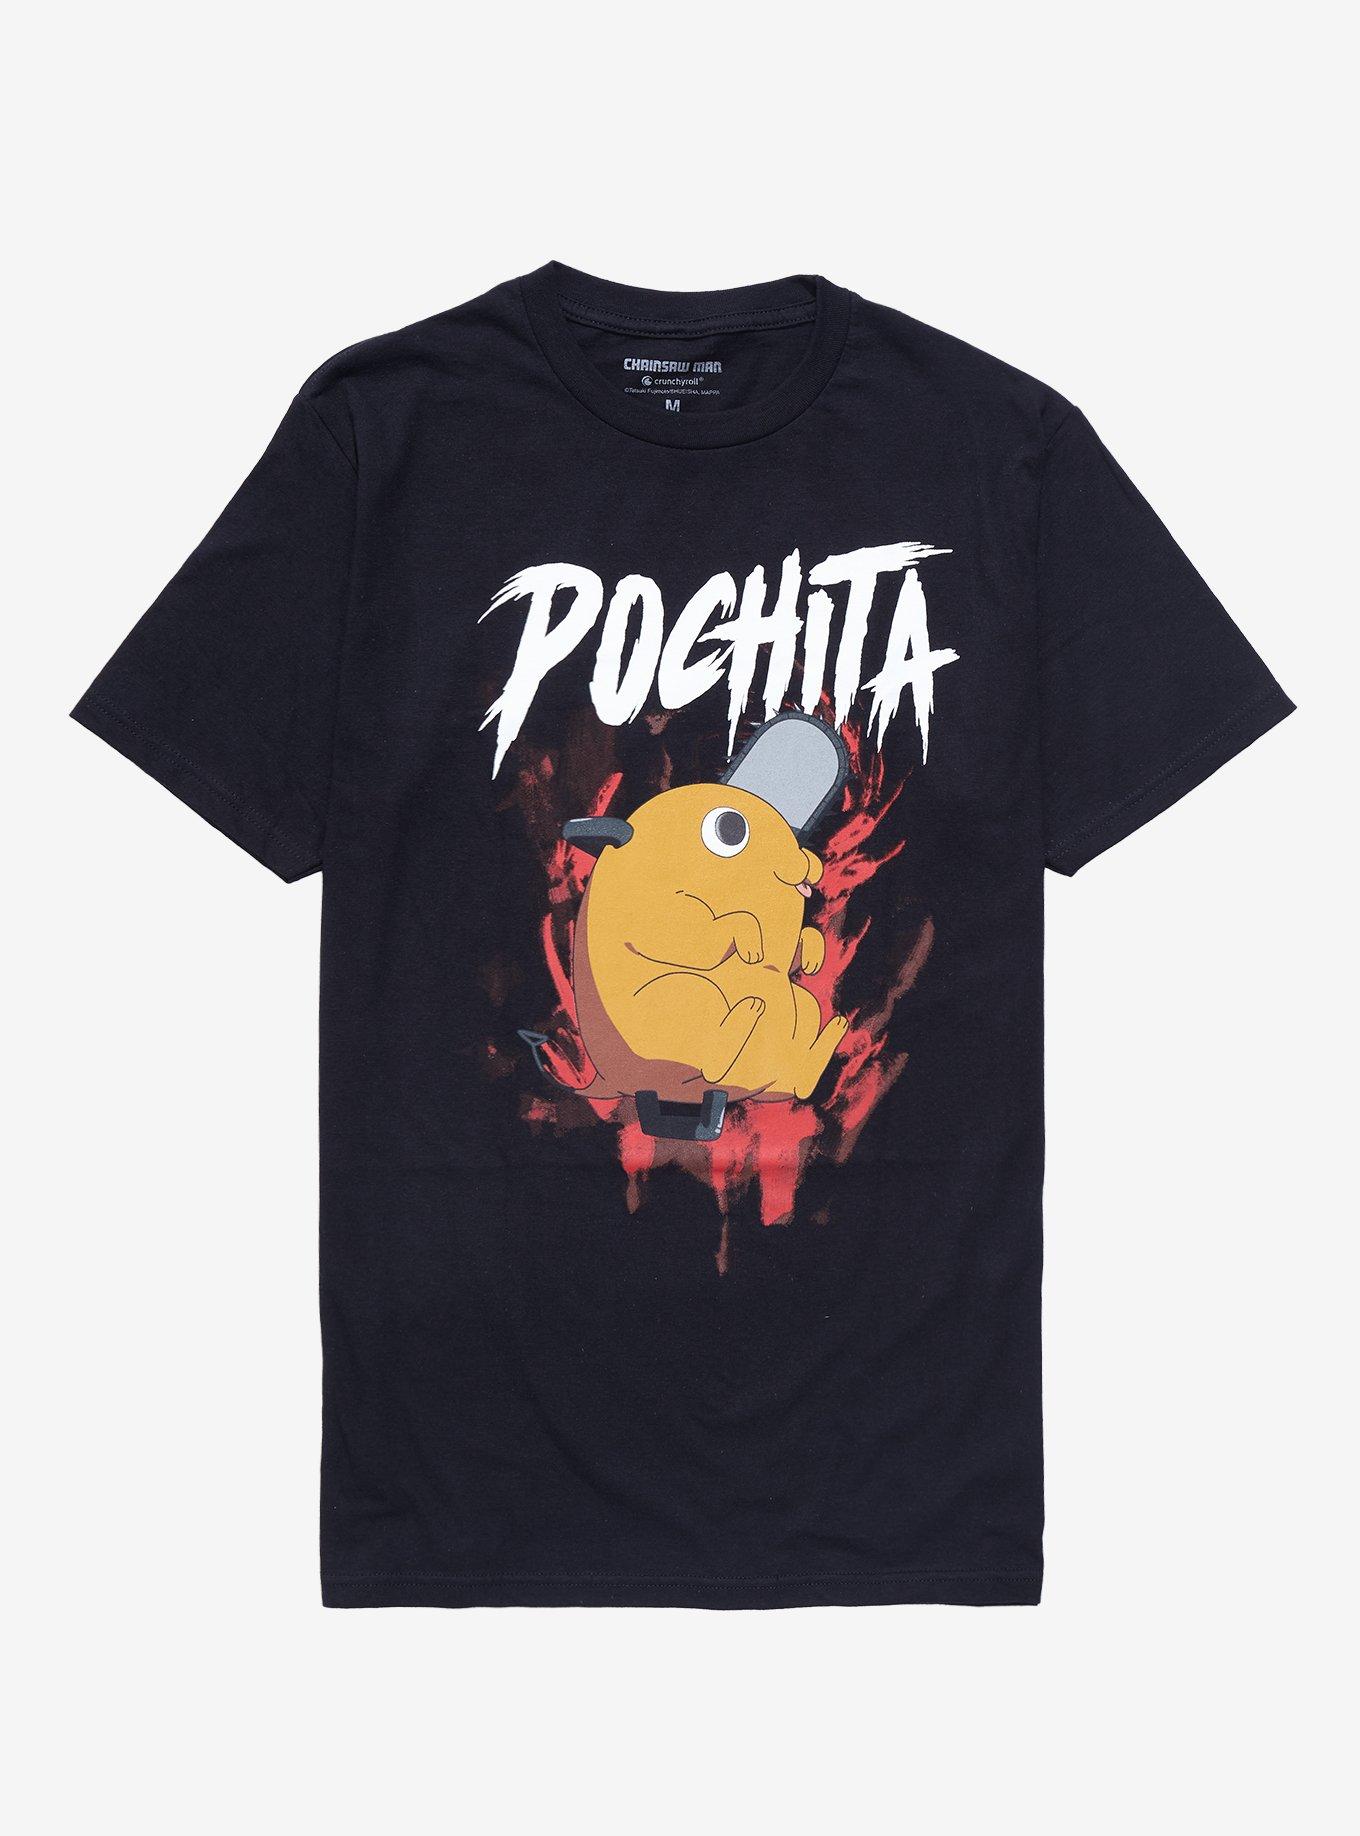 Chainsaw Man Pochita Metal T-Shirt, BLACK, hi-res